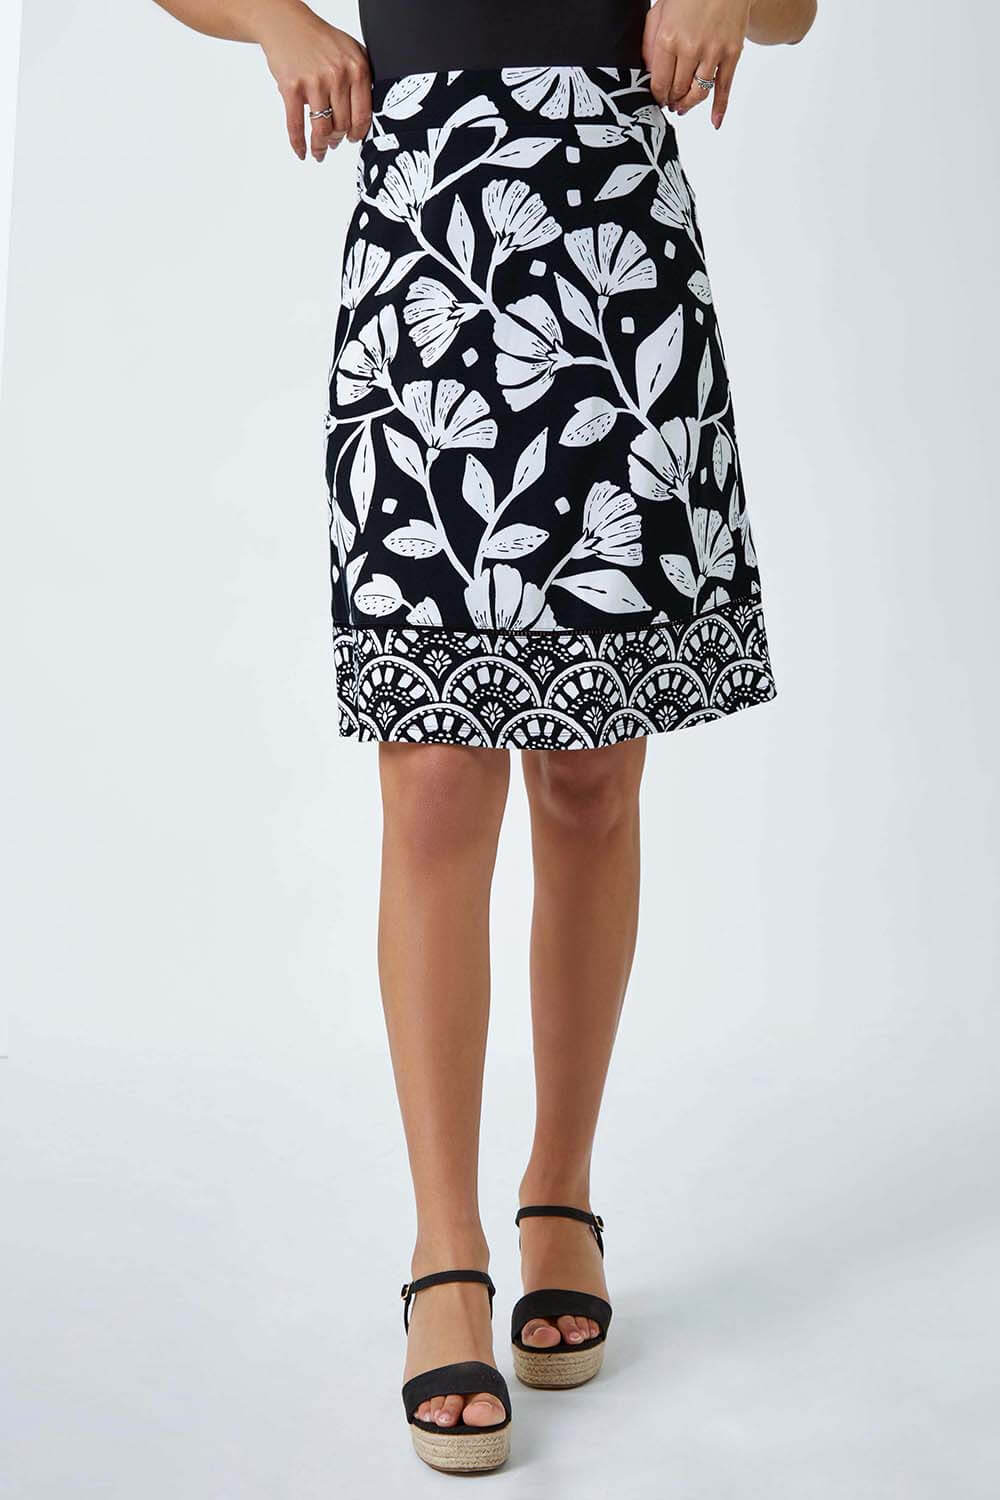 Black Cotton Blend Floral Stretch Skirt, Image 4 of 5